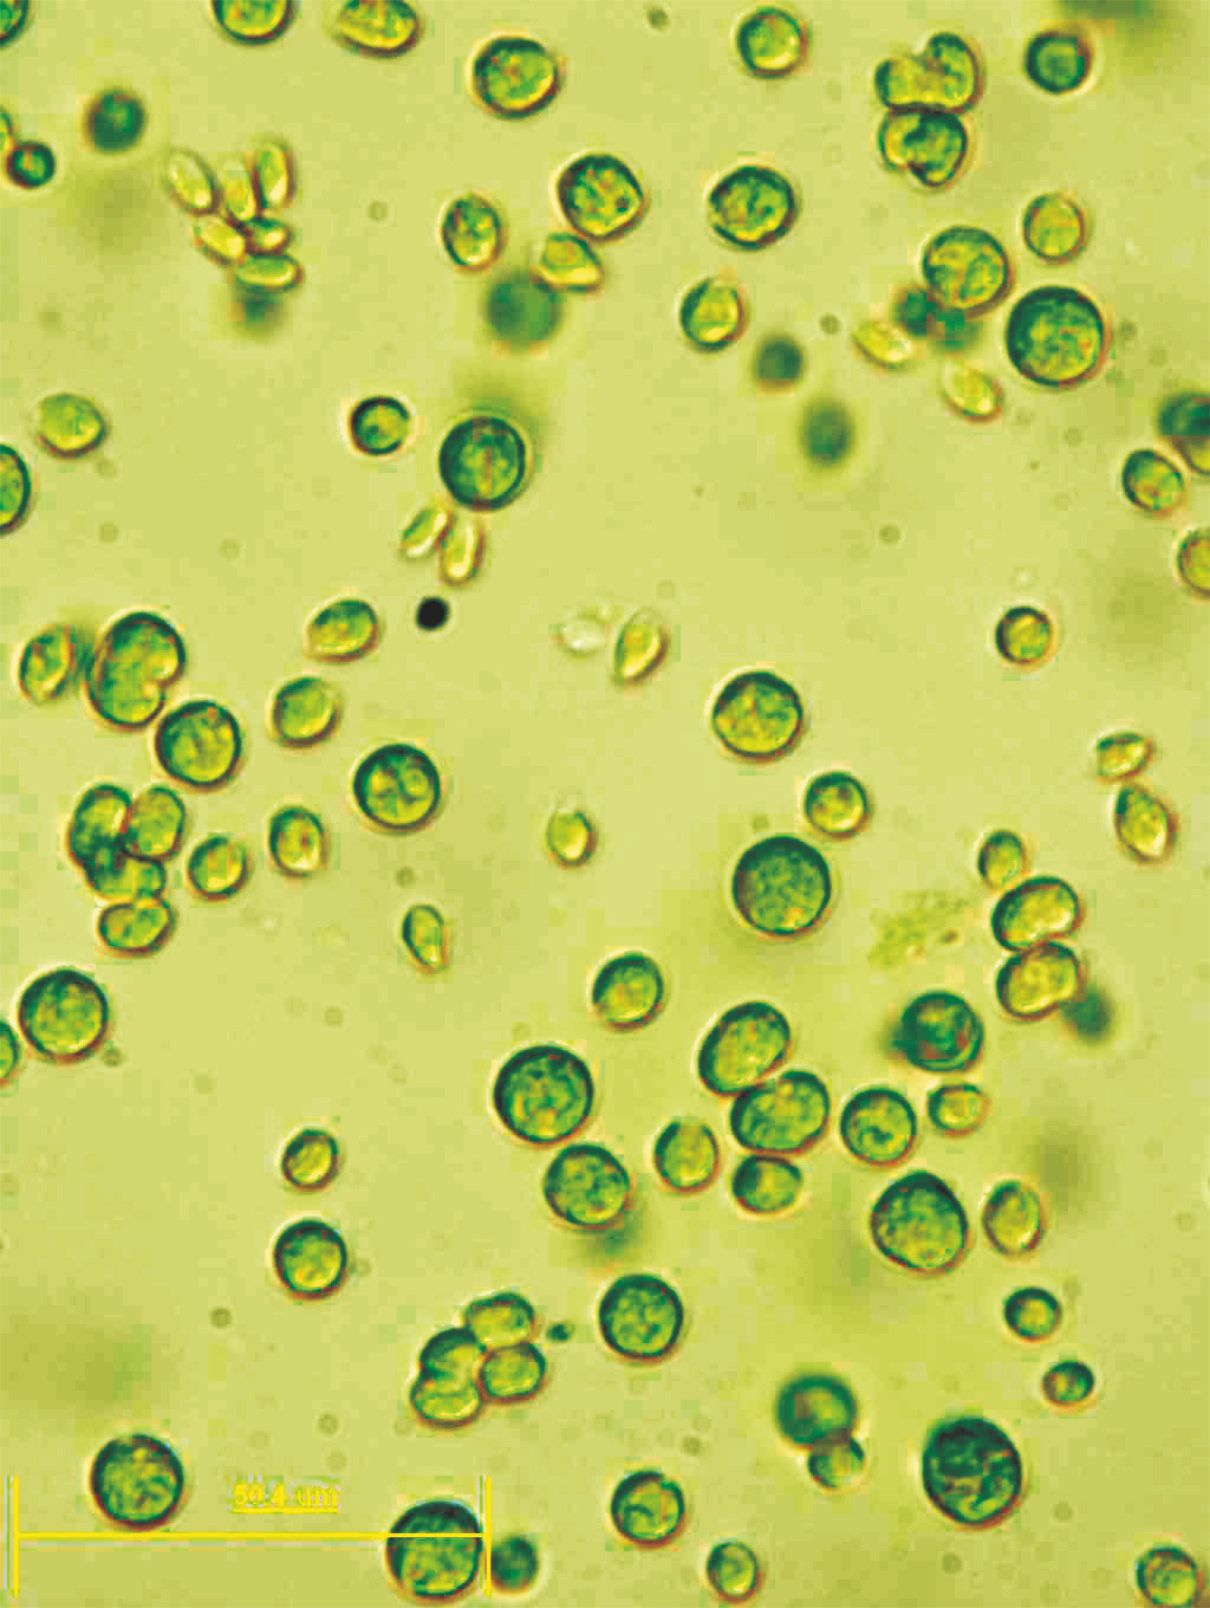 Chlamydomonas reinhardtii est une algue mobile se déplaçant à l'aide de 2 flagelles. Elle pratique la photosynthèse, ce qui ne l'empêche pas de partager certaines caractéristiques génomiques avec les animaux (environ 10 % de ses gènes). Cet organisme est utilisé comme modèle biologique depuis les années 1960.&nbsp;© université de Bielefeld